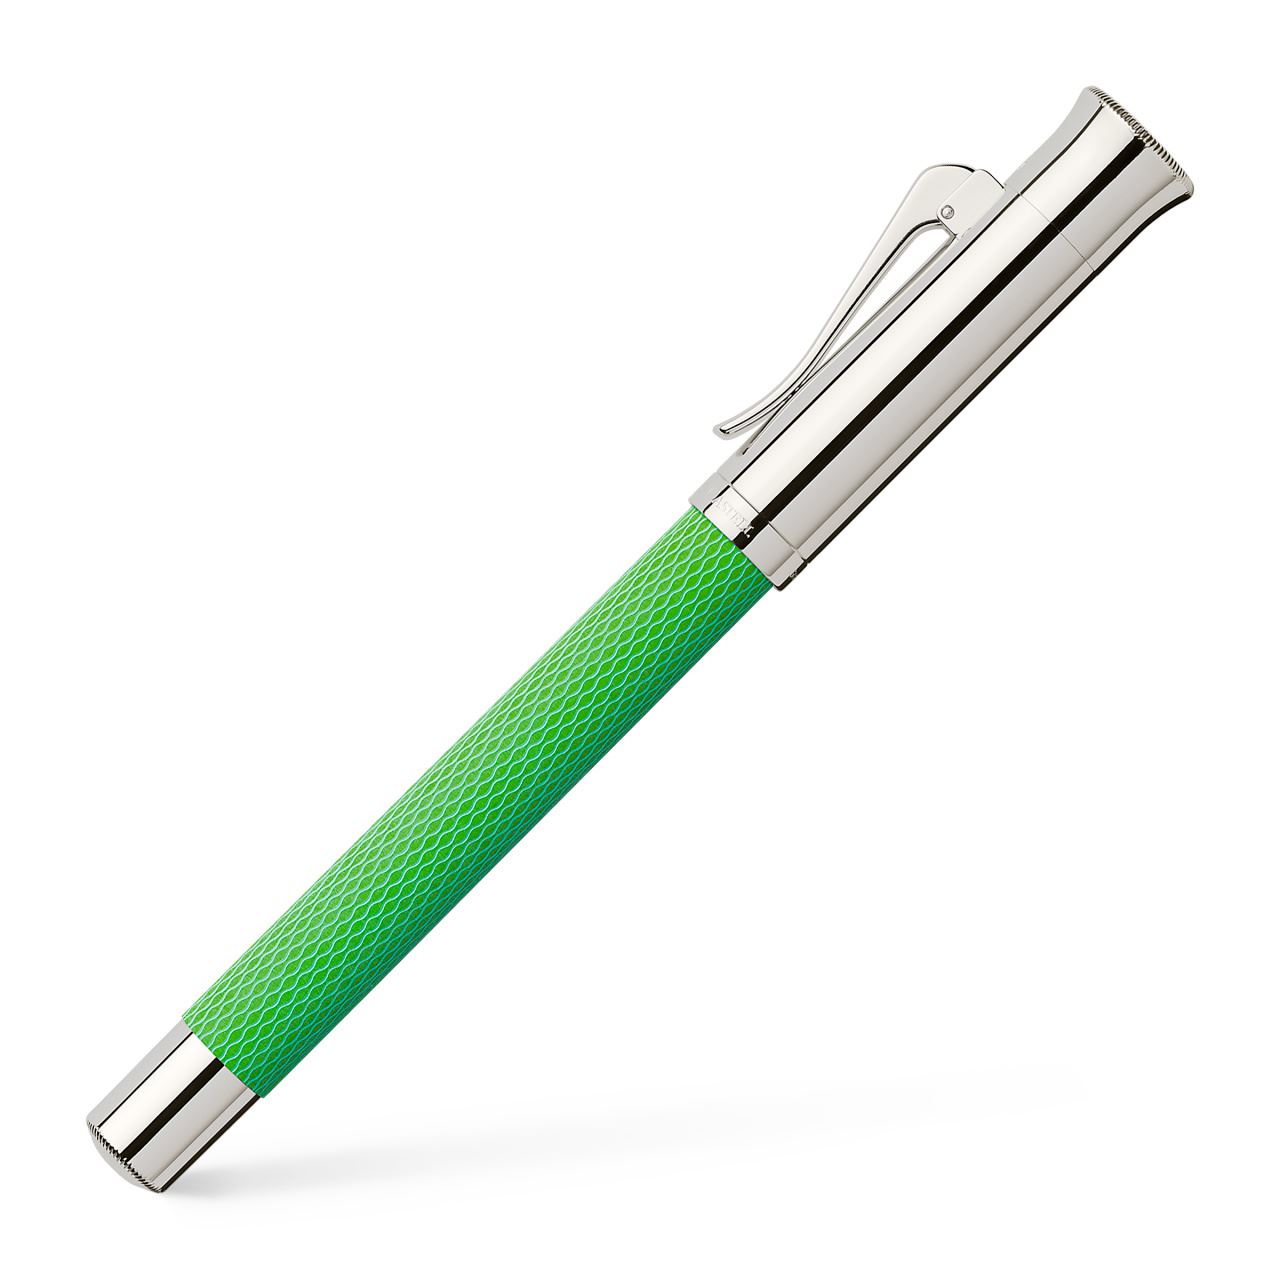 Graf-von-Faber-Castell - Fountain pen Guilloche Viper Green F